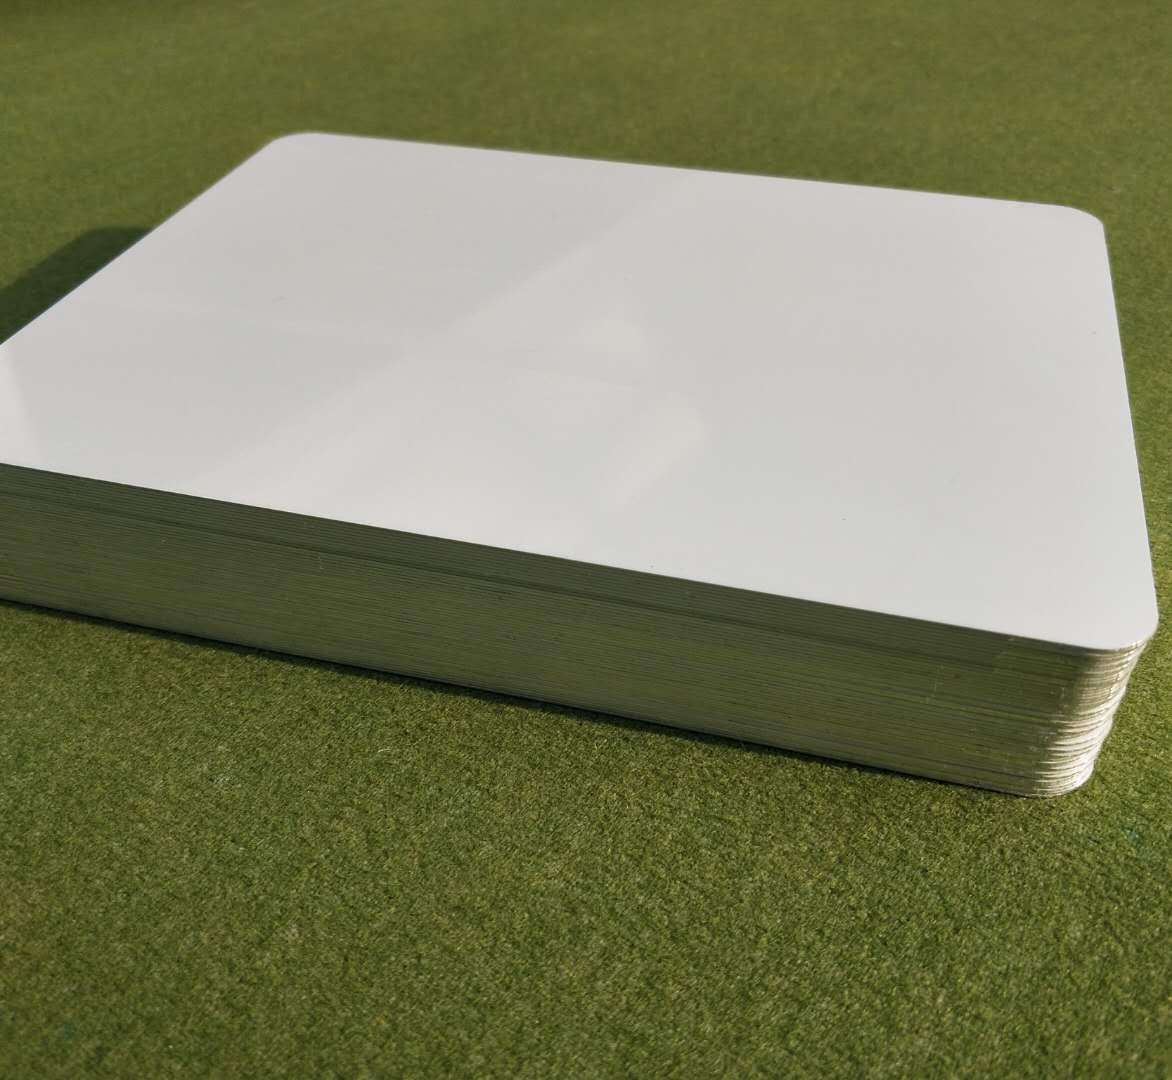 热转印纯白双面铝板 热升华双面涂层铝板UV打印双面铝牌 纯白铝板